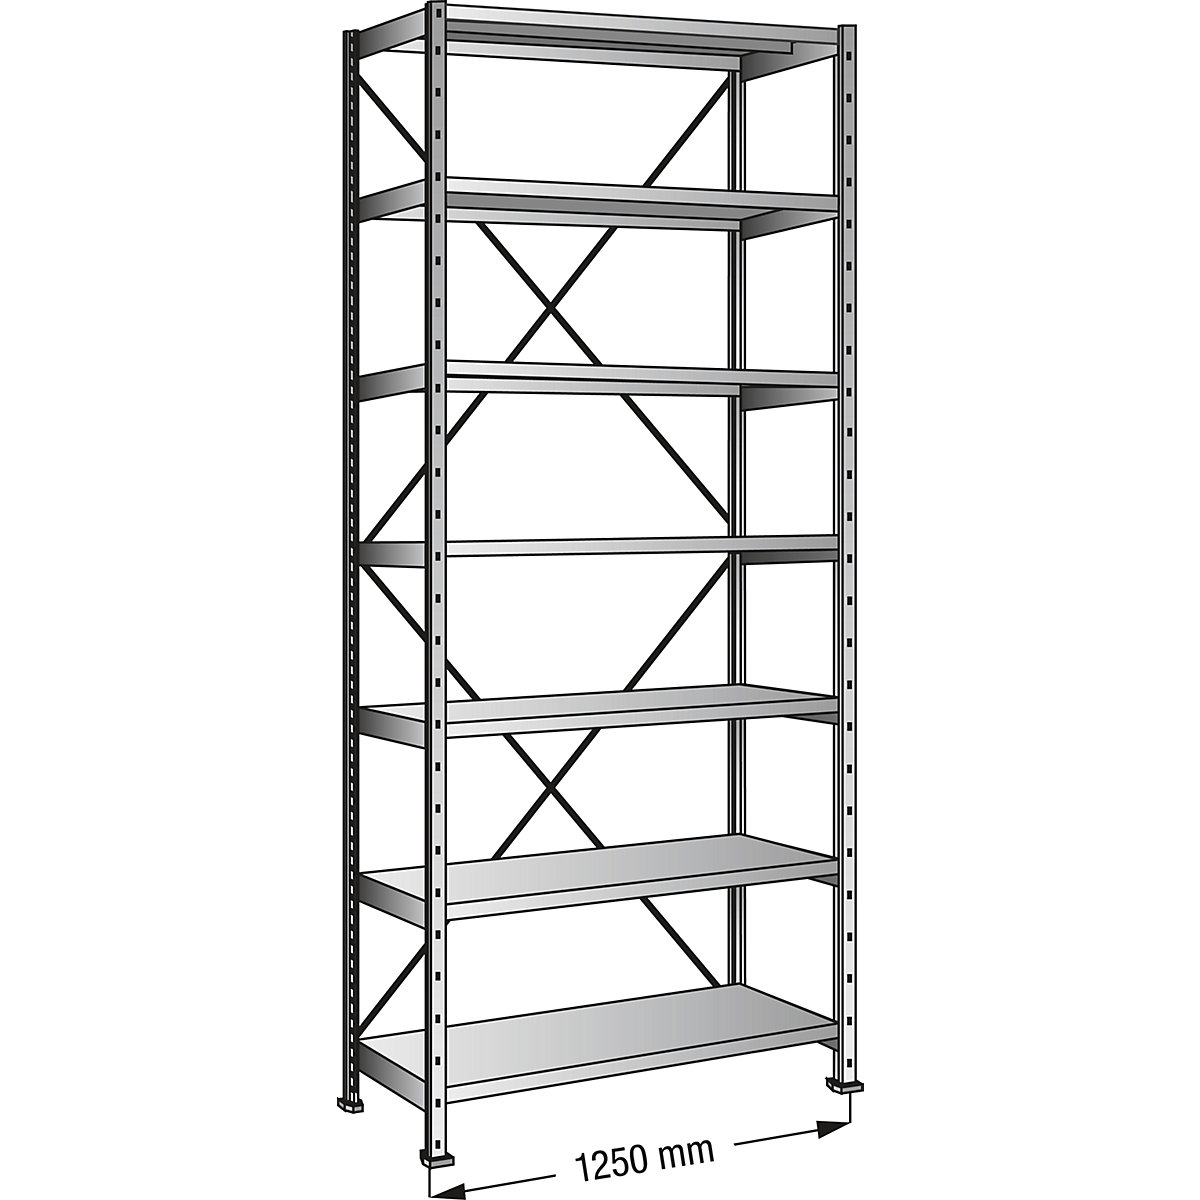 Boltless shelving unit, zinc plated, 7 shelves, height 2640 mm, shelf width 1200 mm, depth 700 mm, standard shelf unit